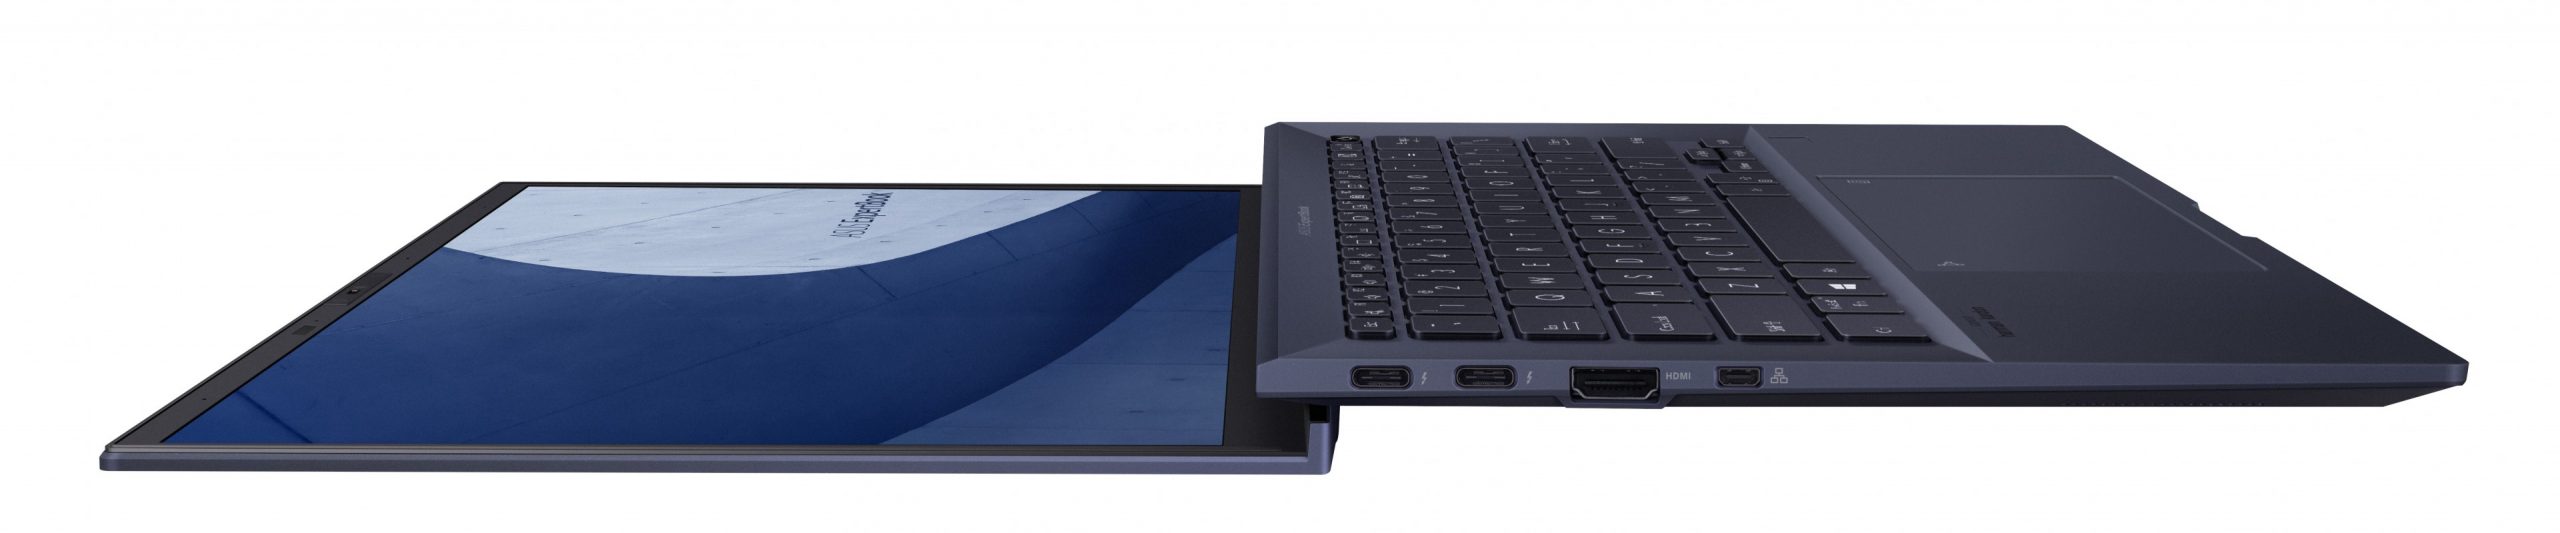 Asus-ExpertBook-B9400-1-scaled.jpg